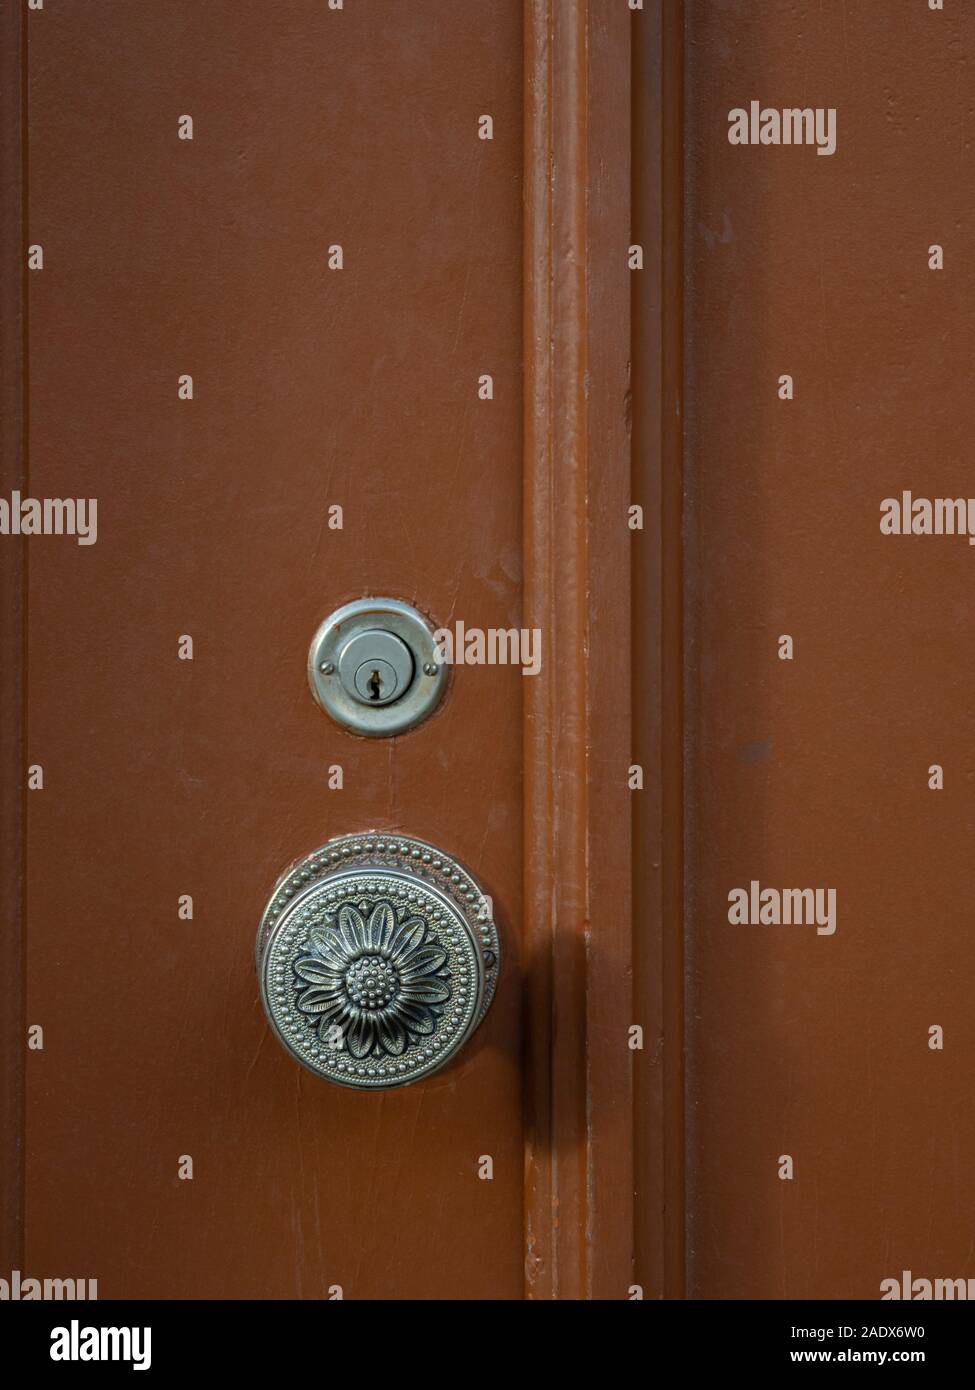 Door knob and keyhole on a brown wooden door Stock Photo